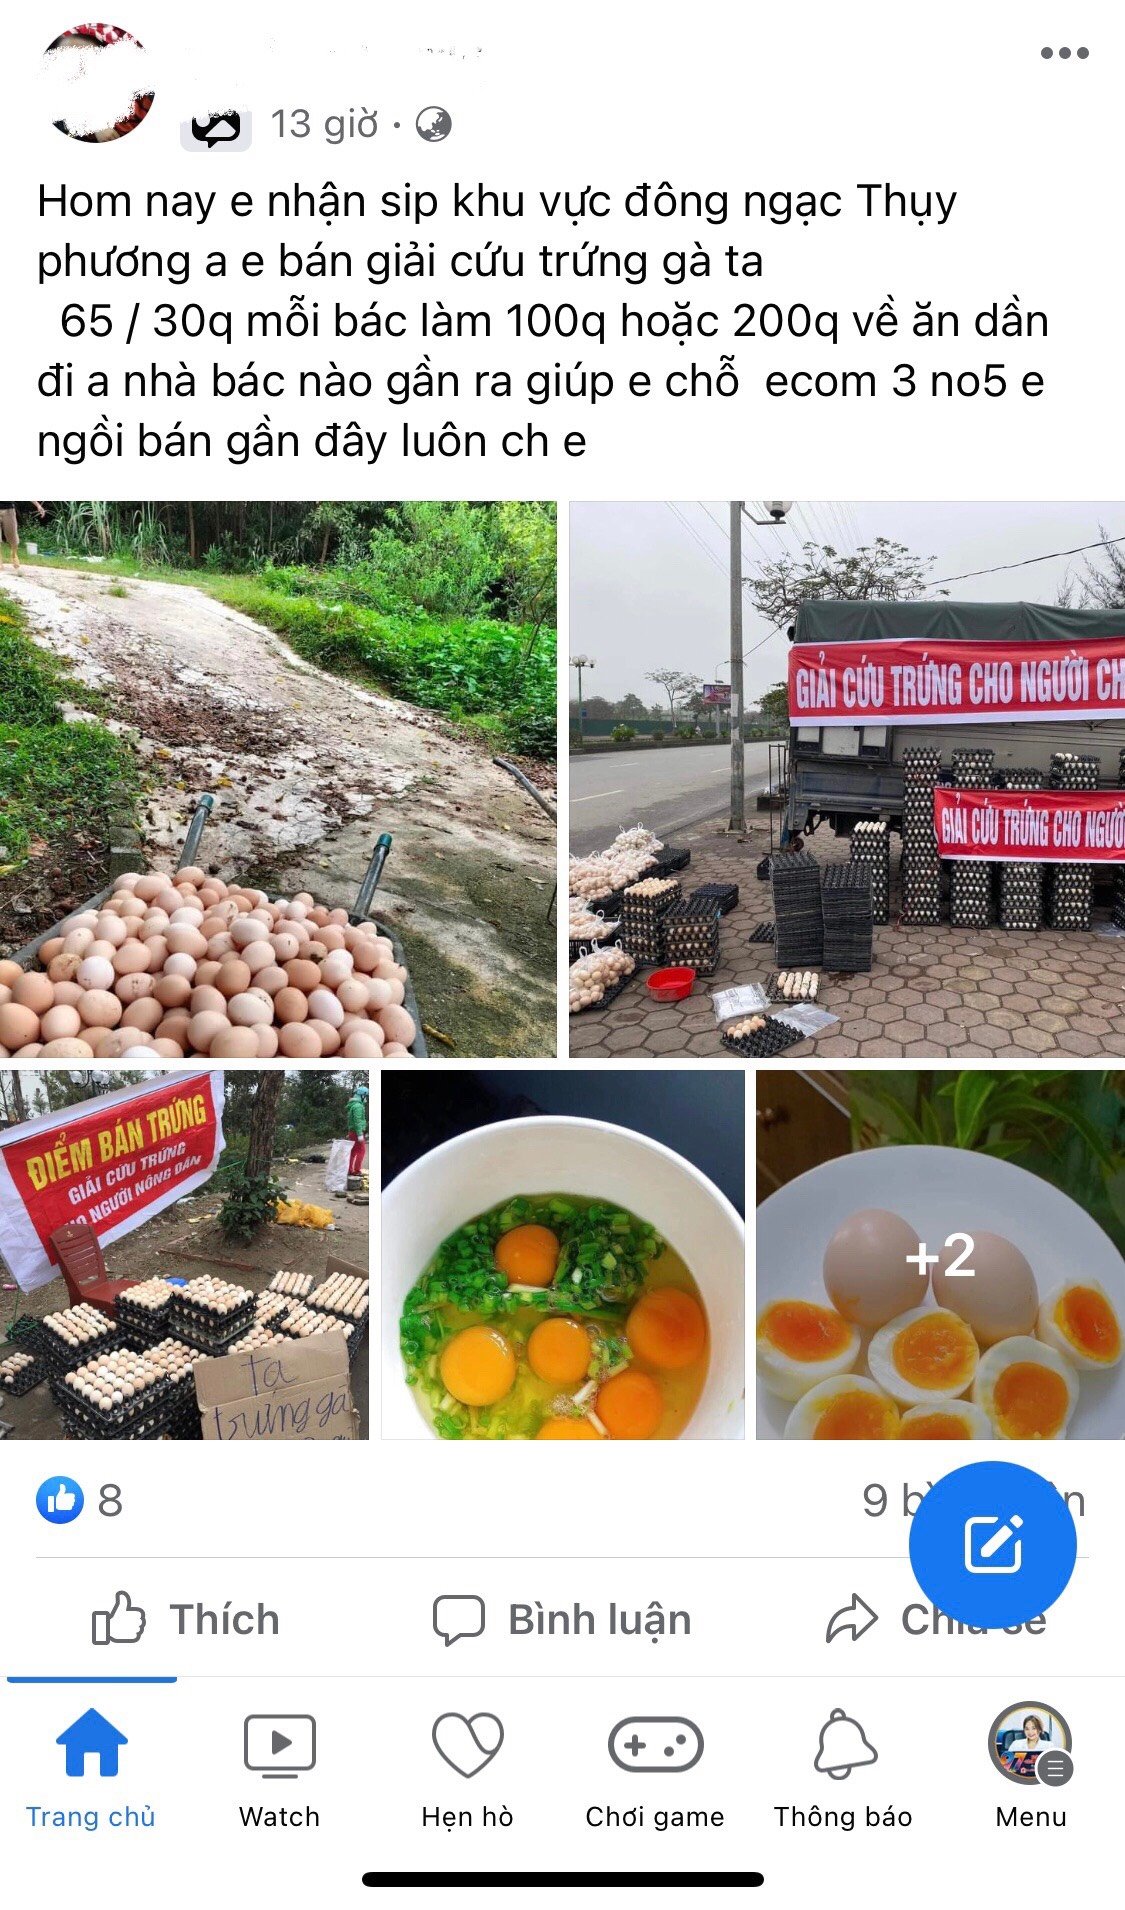 Rộ giải cứu trứng gà trên đường phố Hà Nội: Bảo quản trứng thế nào cho đúng cách?